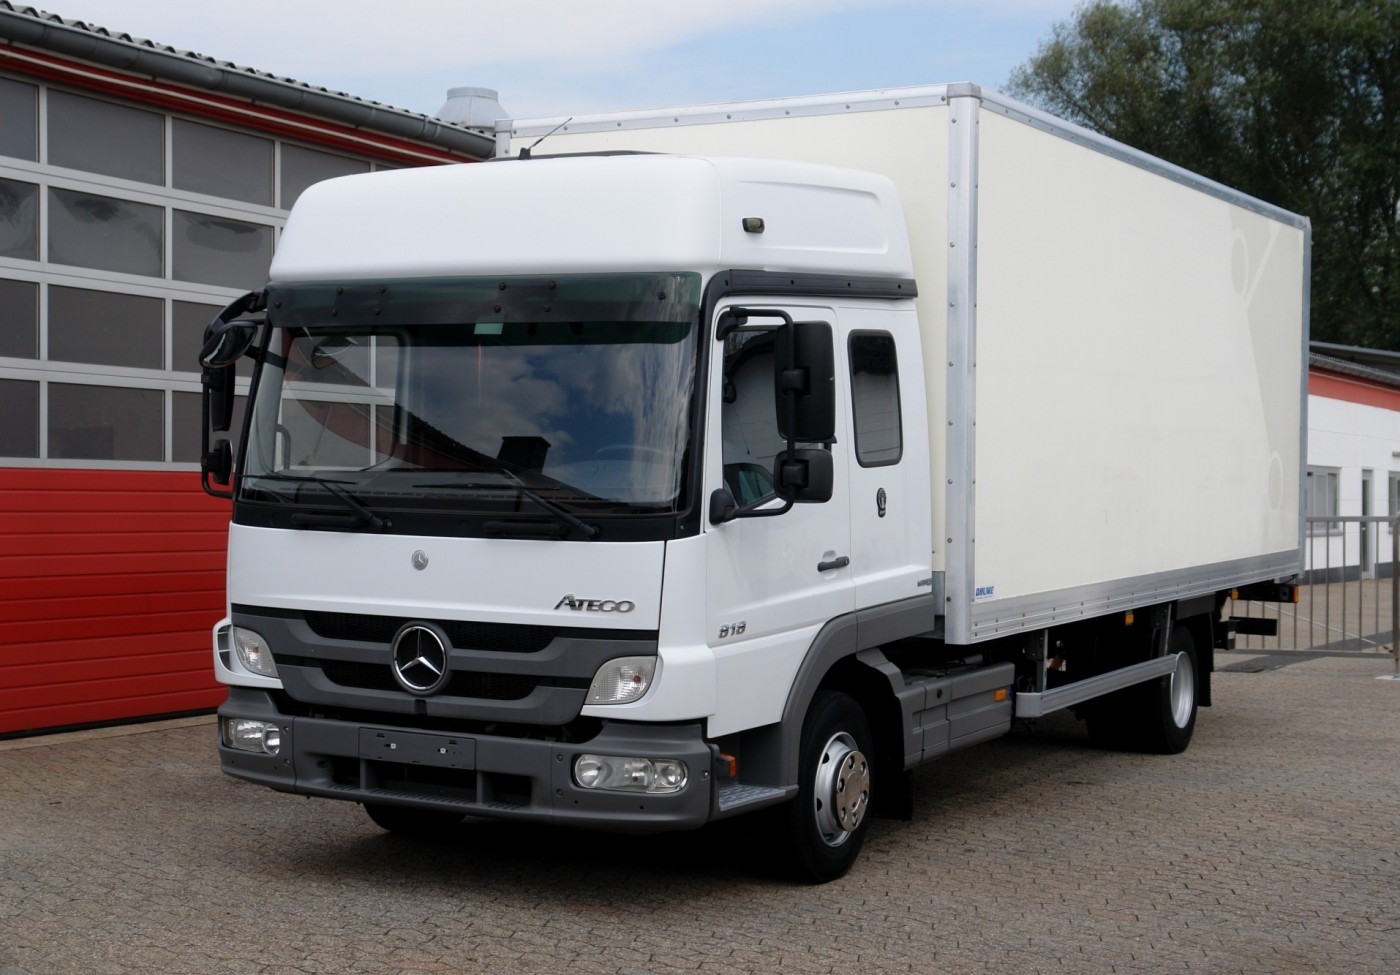 Mercedes-Benz - Atego 818 RL ciężarówka furgon 6,20m Ręczna skrzynia biegów, zawieszenie pneumatyczne, Kabina Bigspace L, Winda 1500kg EURO5